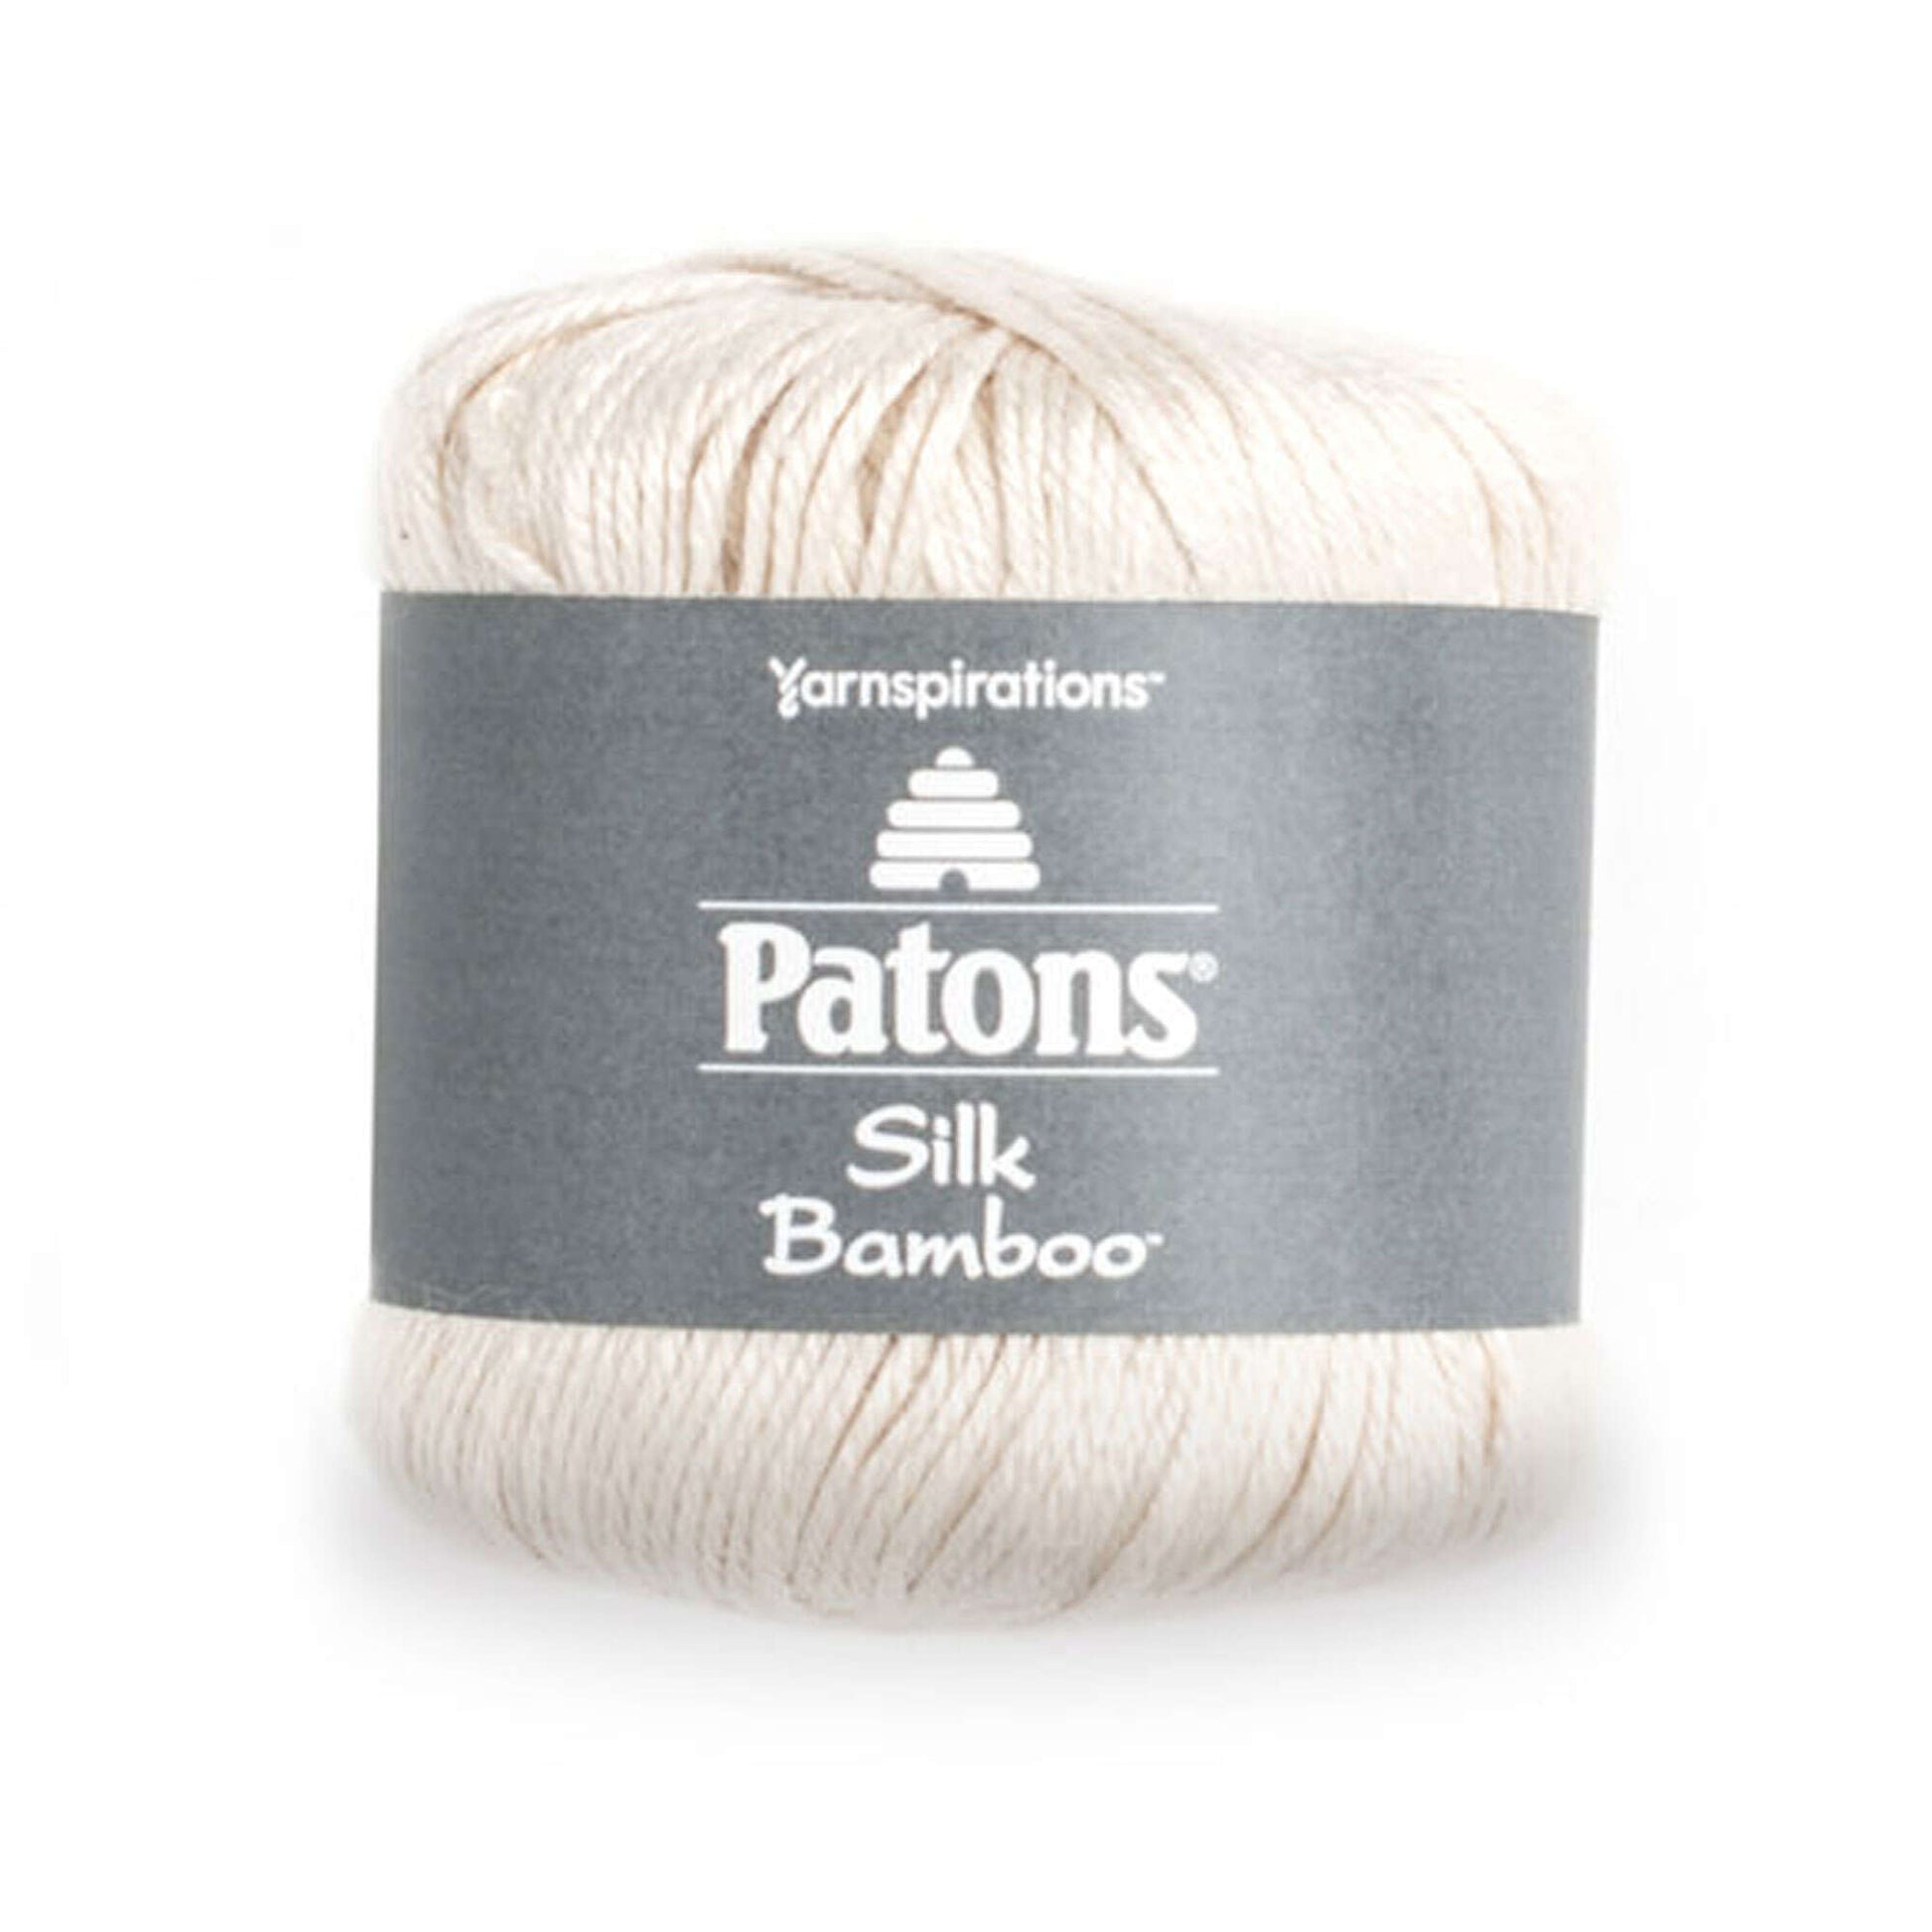 Patons Silk Bamboo Yarn - Discontinued Shades Ivory